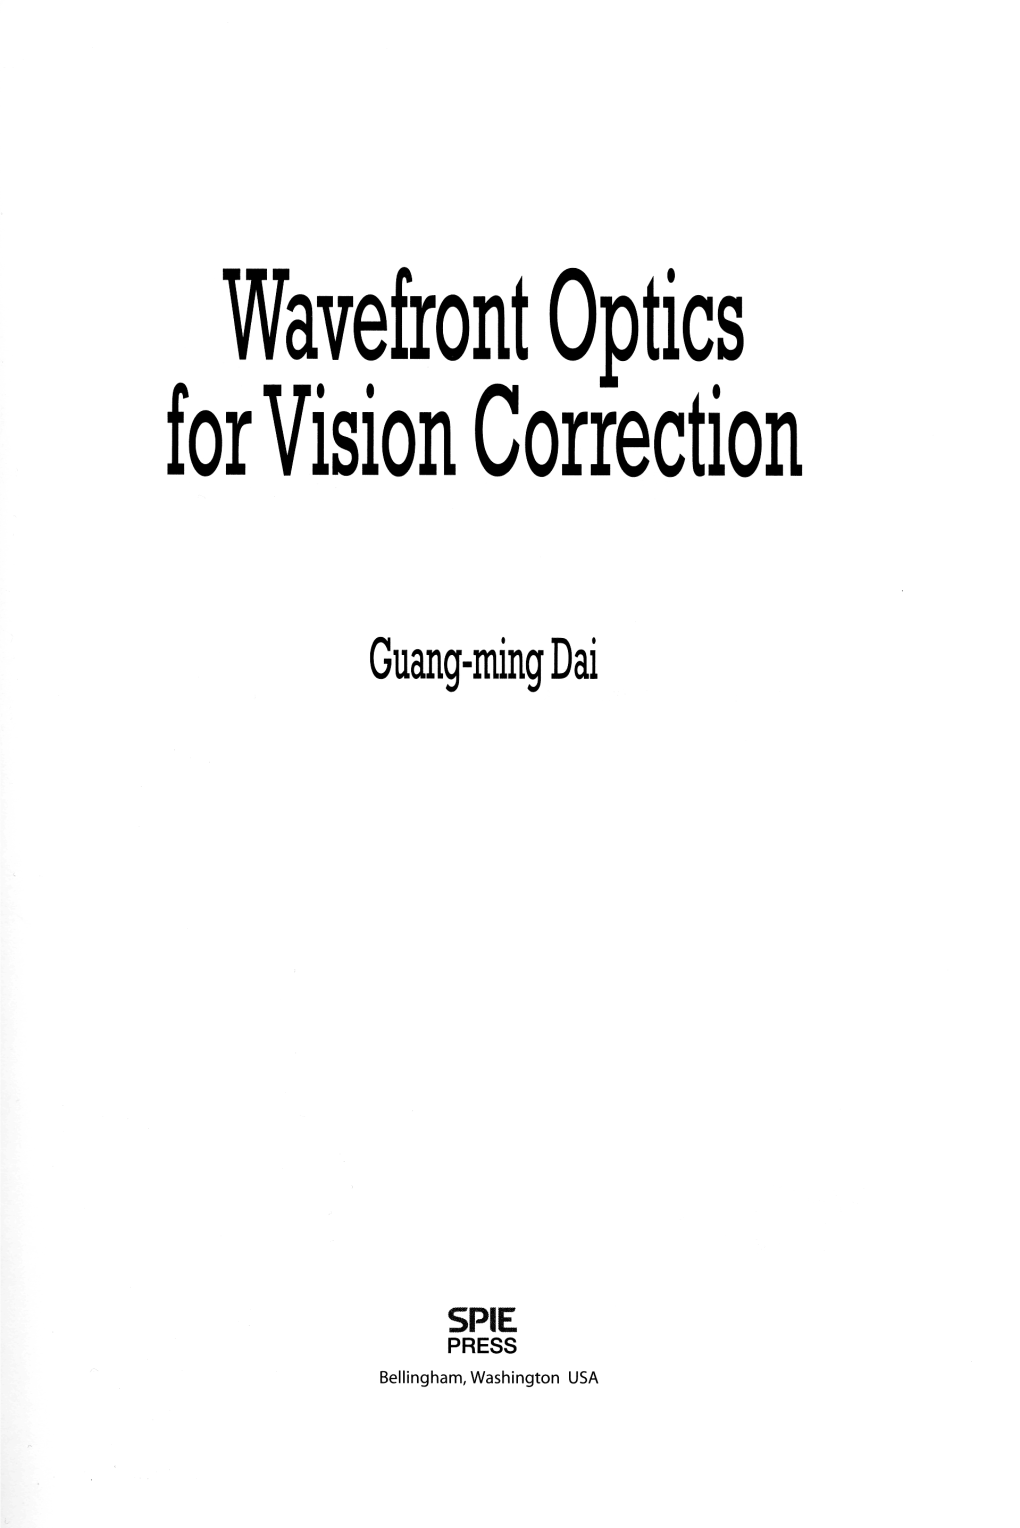 Wavefront Optics for Vision Correction